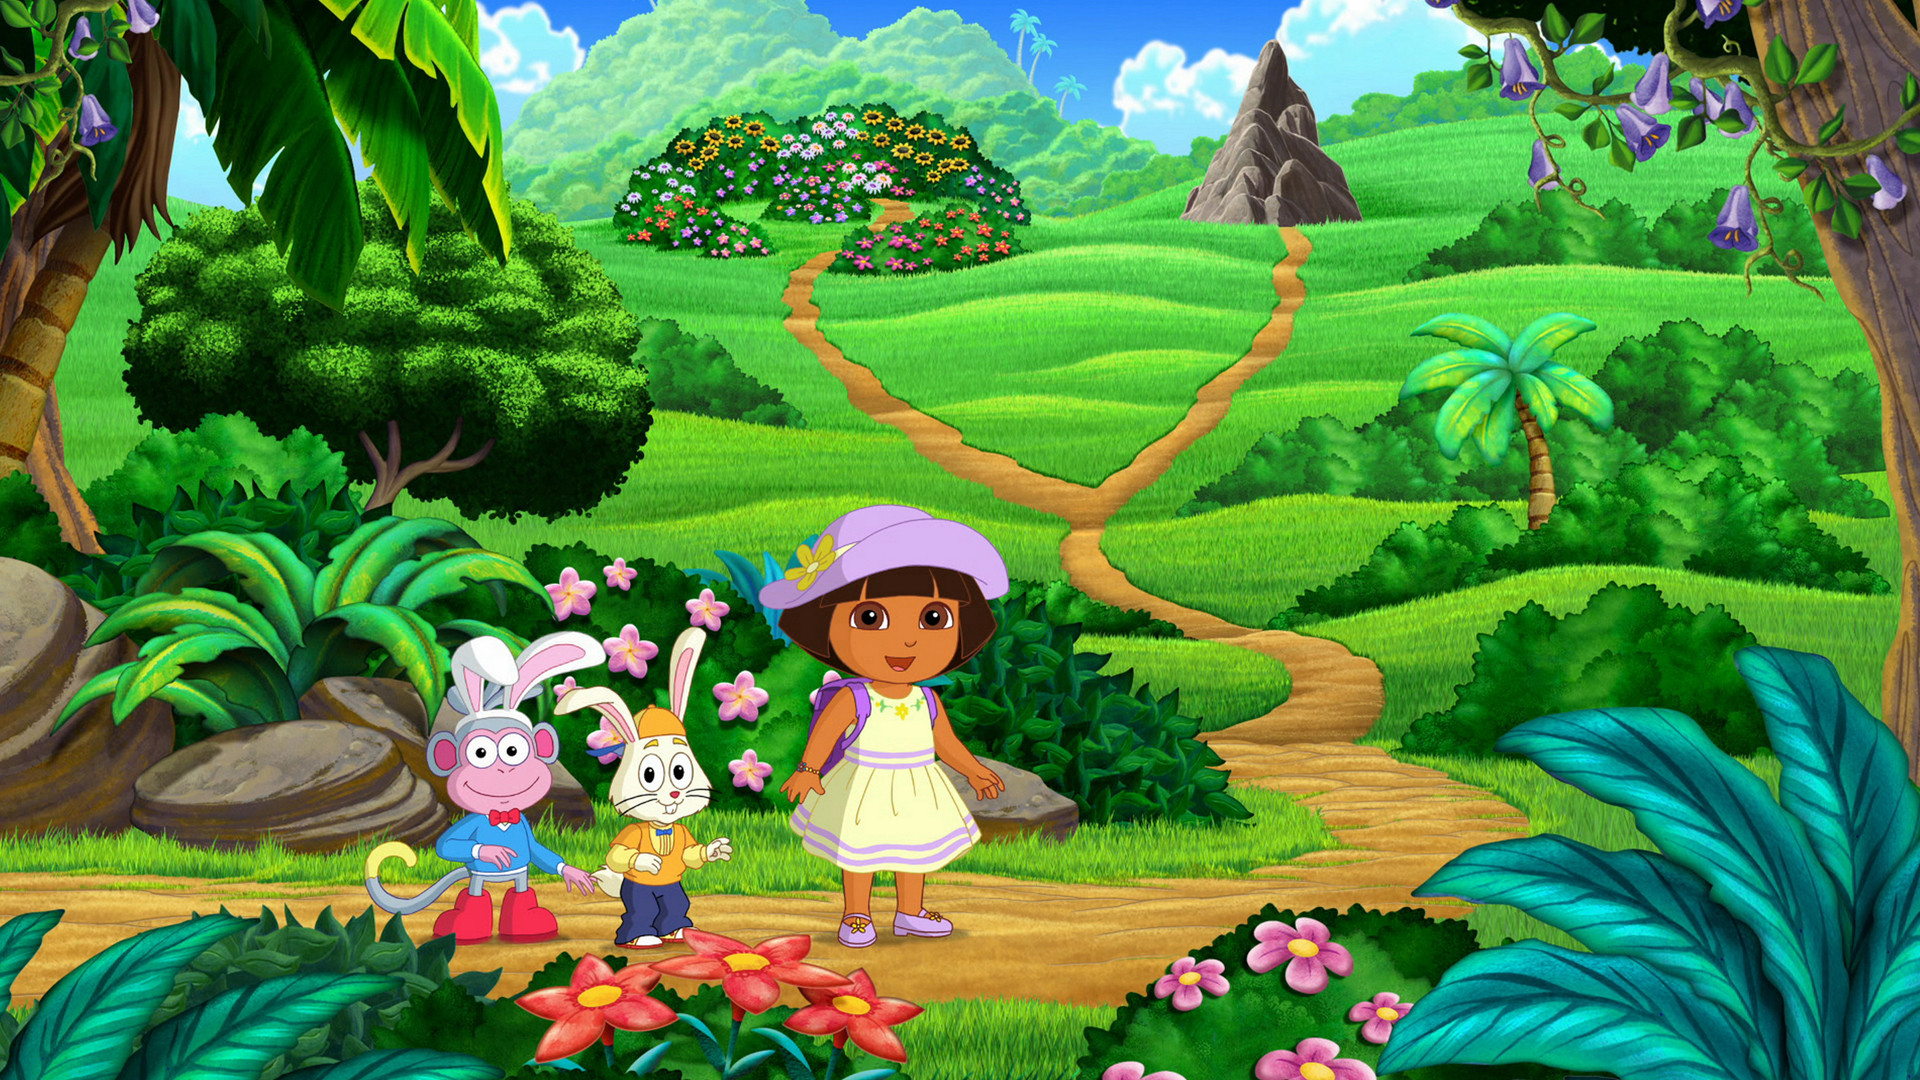 Dora s adventure